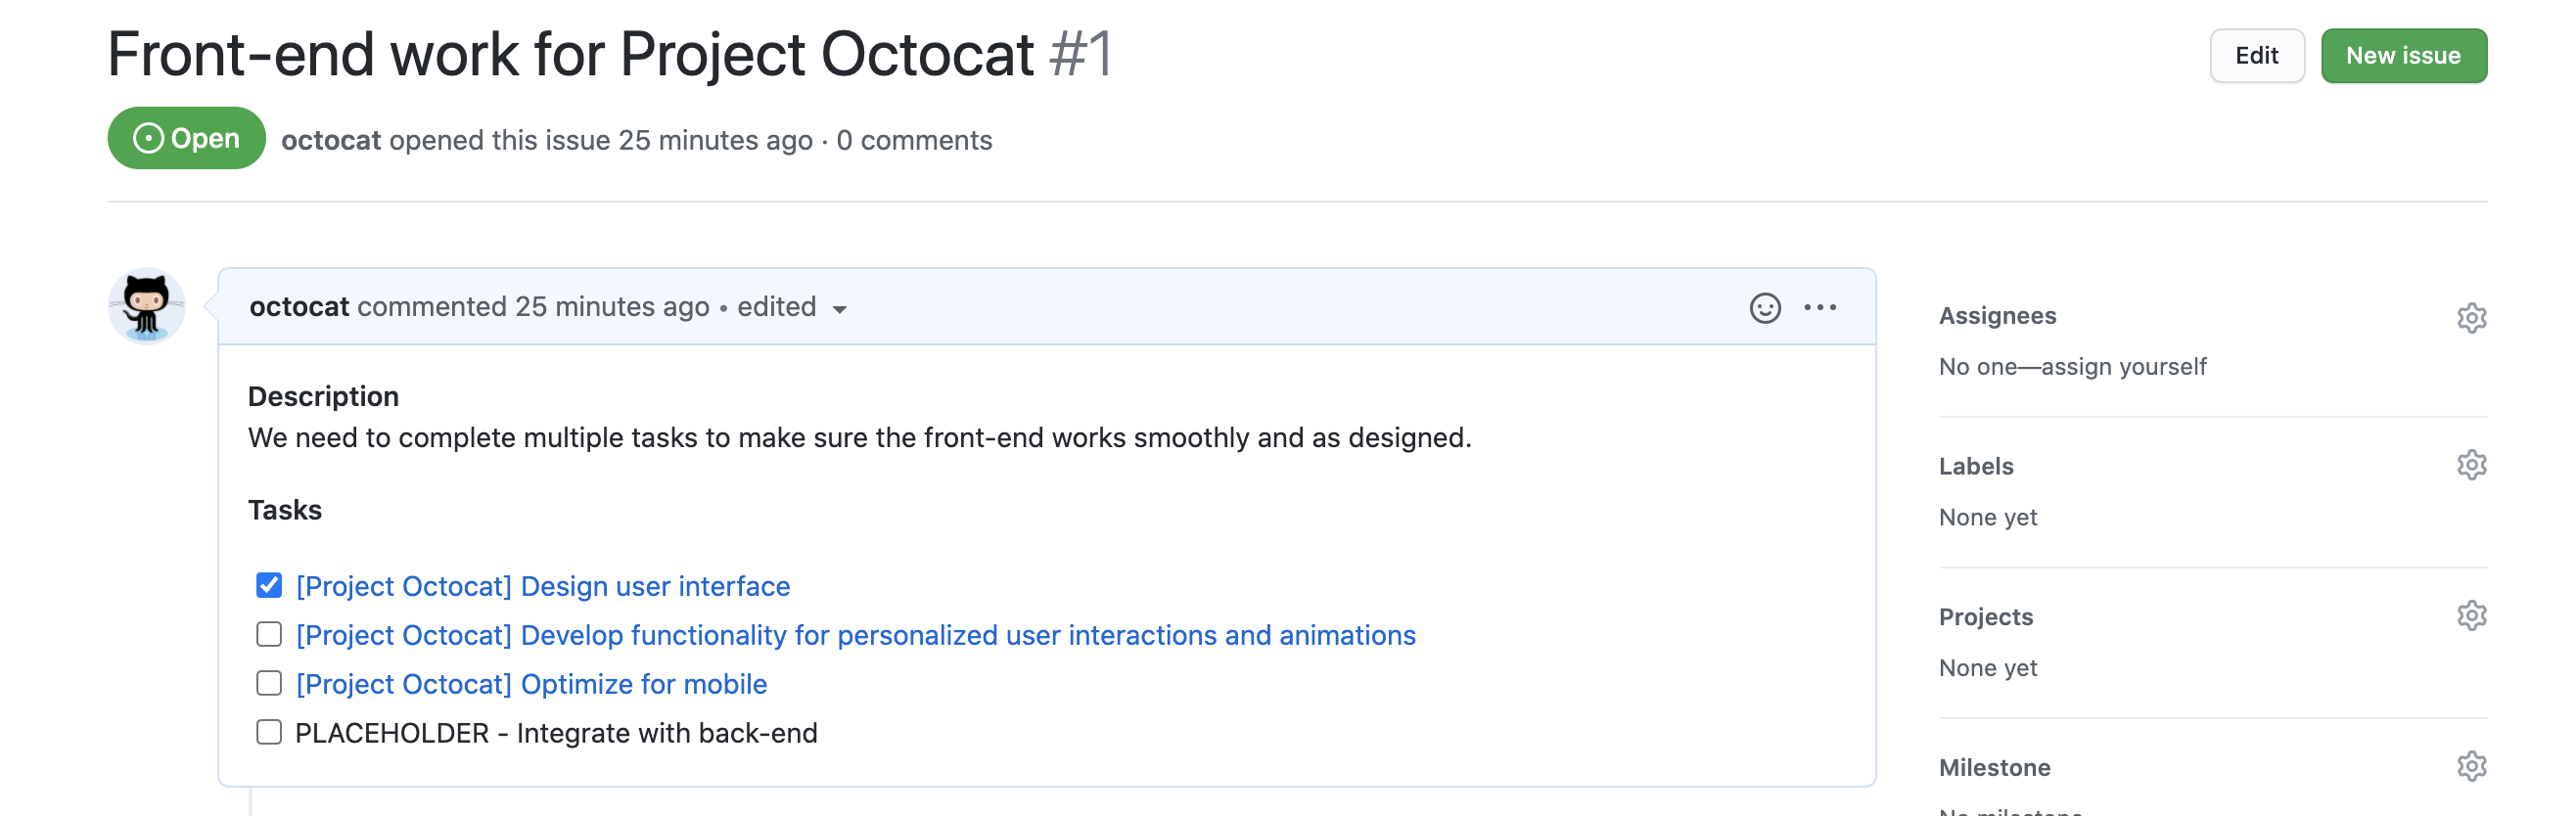 「Project Octocat のフロントエンド作業」イシューのスクリーンショット。 イシューの本文にはタスク一覧が含まれており、各イシューのリンクの前にはチェック ボックスがあります。